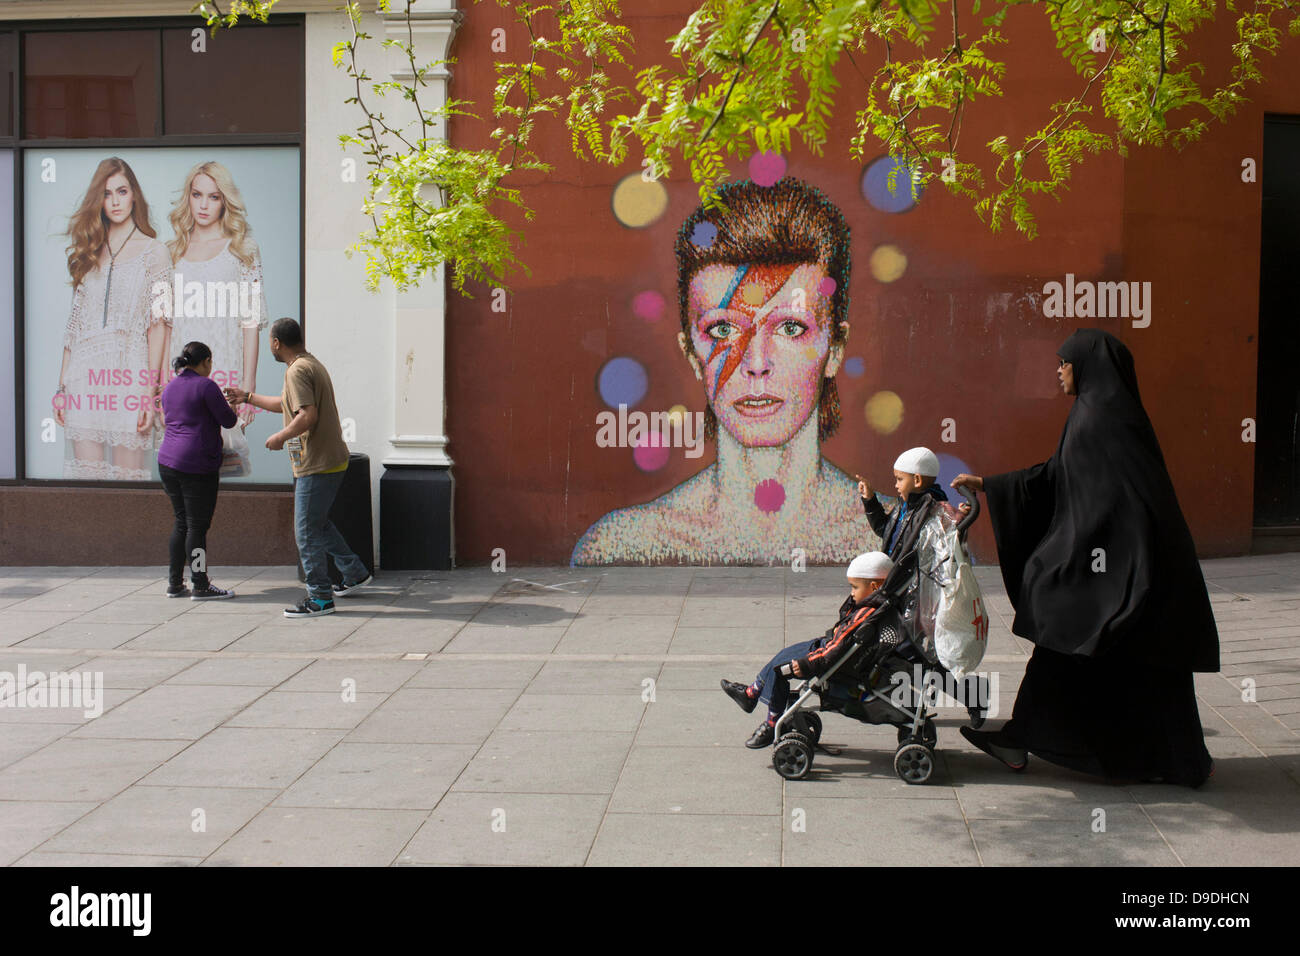 Brixton, Londres : 18 juin 2013 - une fresque du célèbre musicien et chanteur David Bowie est apparue sur le mur de Morleys department store à Brixton, Lambeth, Londres du sud. Le visage de Bowie est sourcé (par l'artiste James Cochran, alias Jimmy C) du couvercle de son album 1973 Aladdin Sane au sommet de sa gloire des années 1970. L'icône pop a vécu à 40 Stansfield Road, Brixton, de sa naissance en 1947 jusqu'en 1953. Cette couverture a paru dans Rolling Stone de la liste des 500 meilleurs albums de tous les temps, rendant # 277. Crédit : Richard Baker / Alamy Live News Banque D'Images